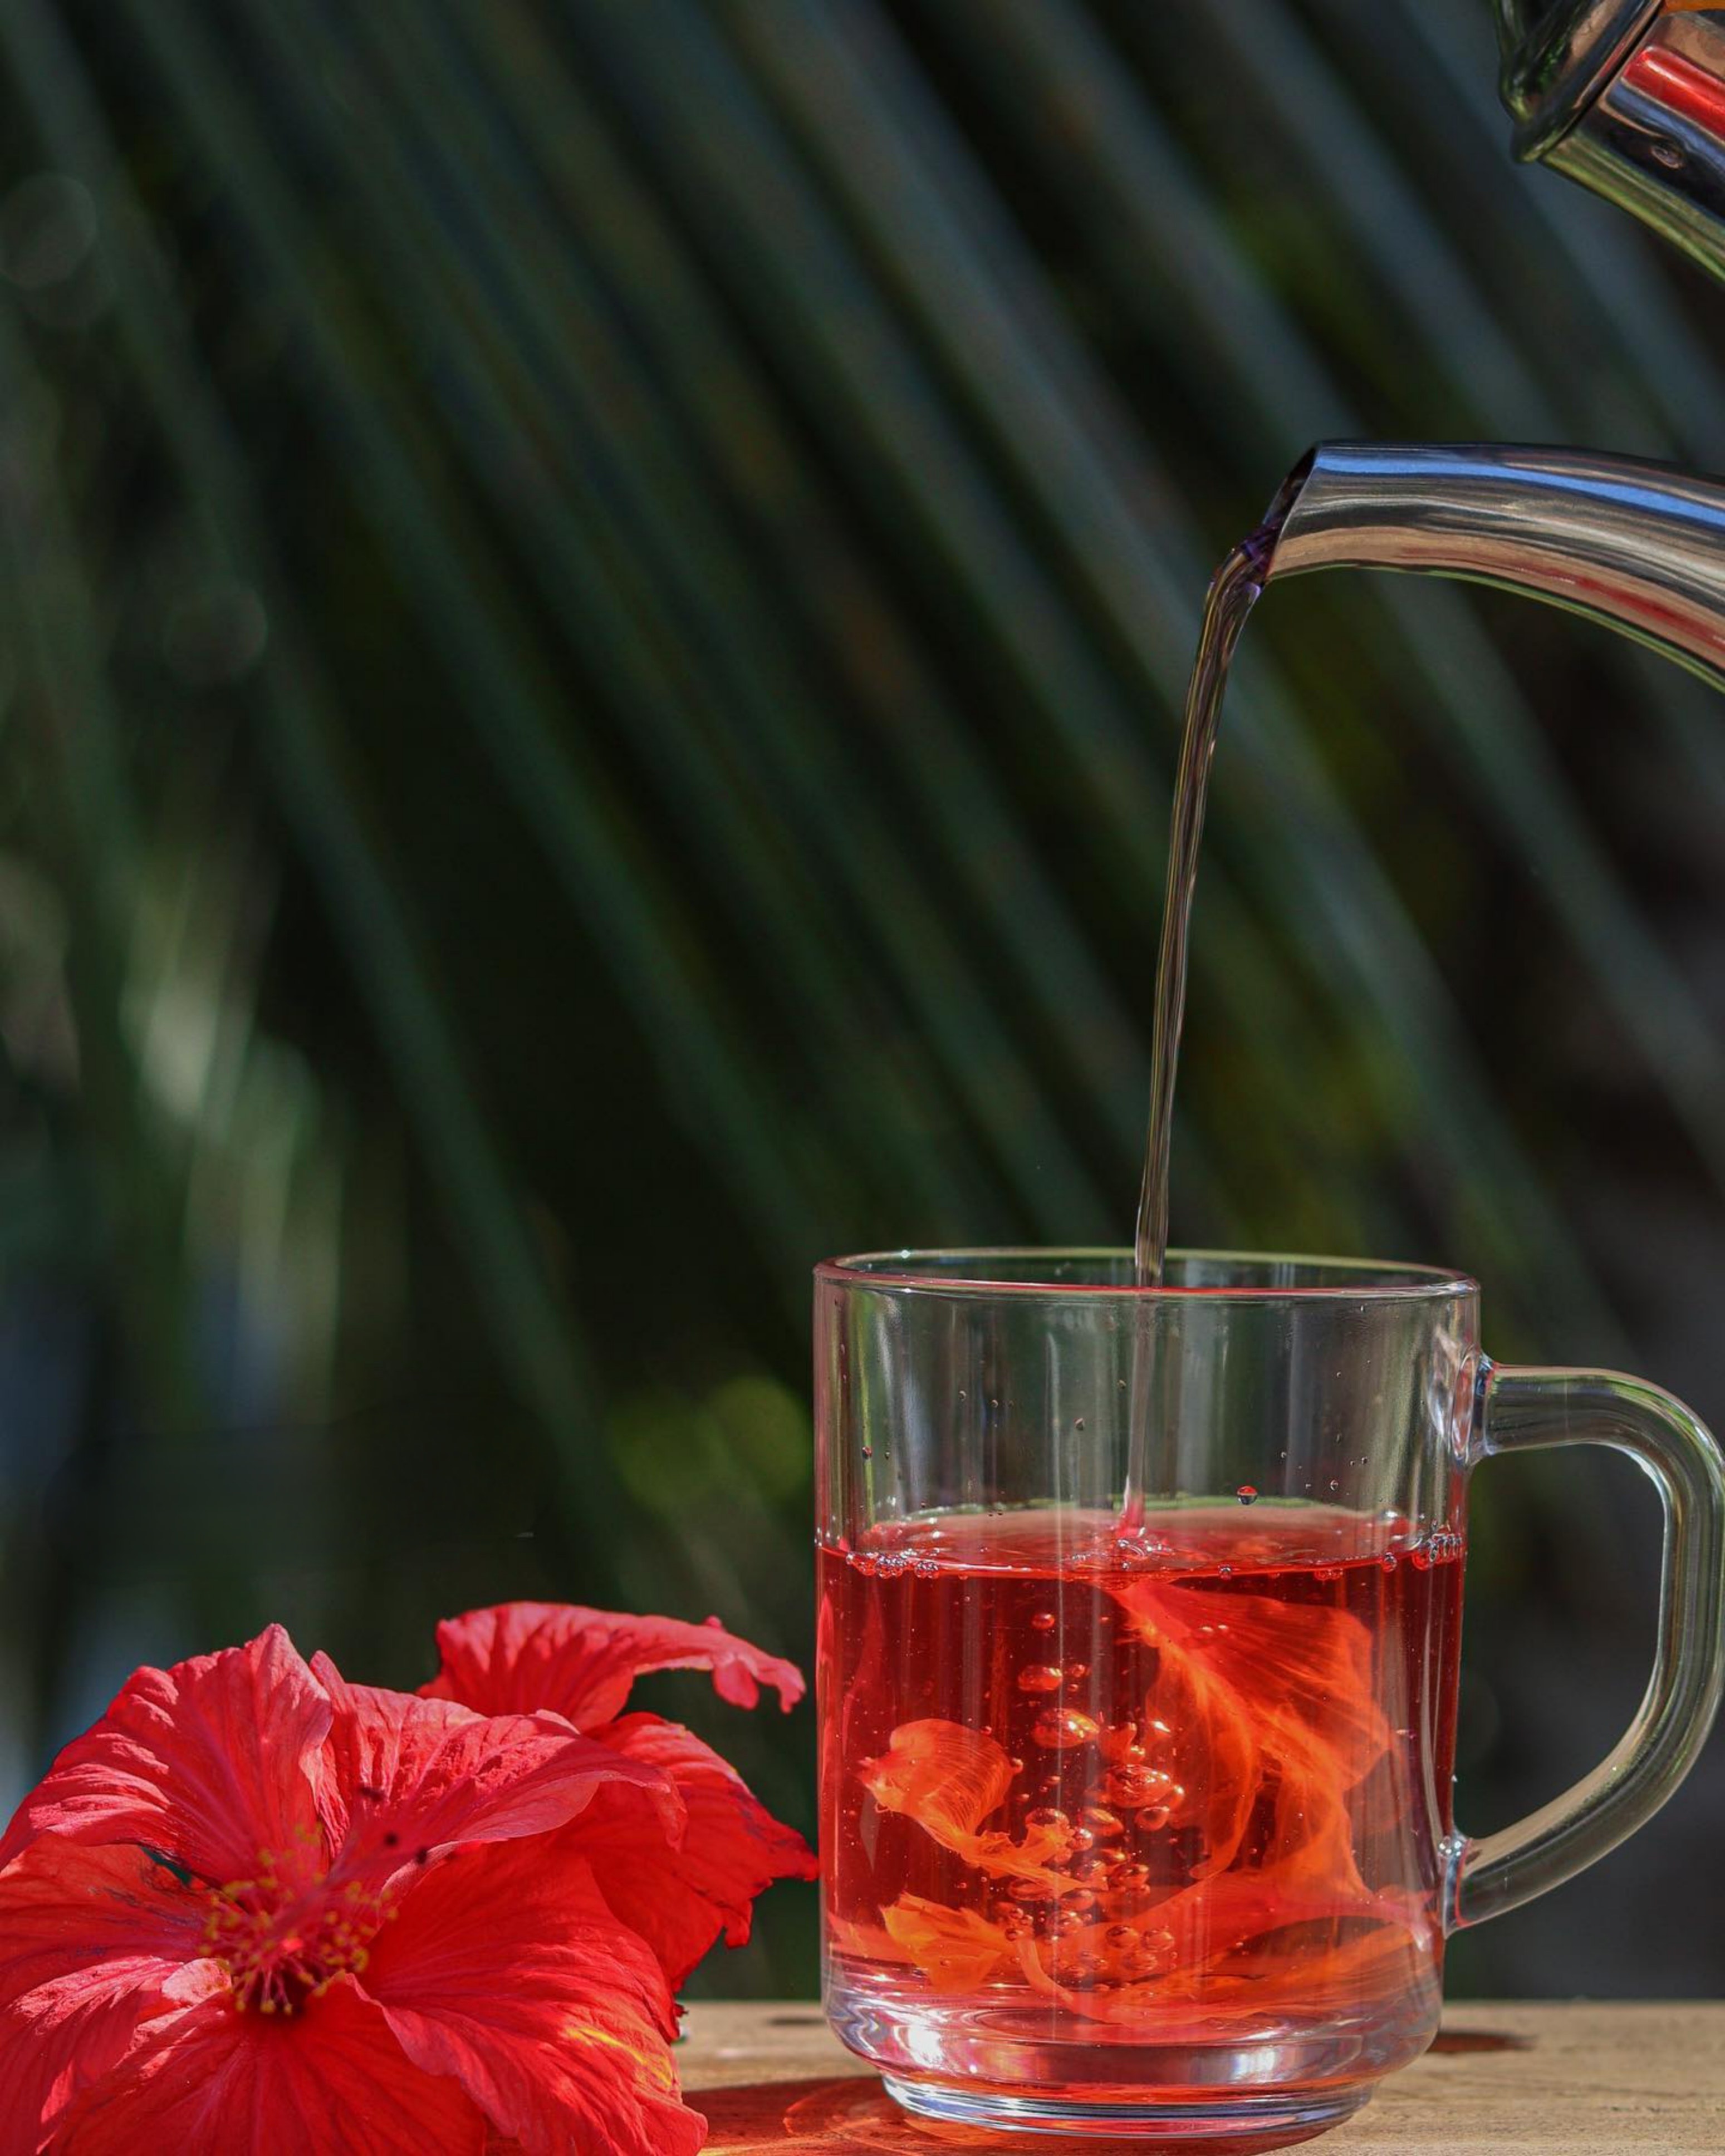 تناول شاي الكركديه يمكن أن يساعد في تقليل وخفض مستويات الدهون في الدم (بيكسيلز)